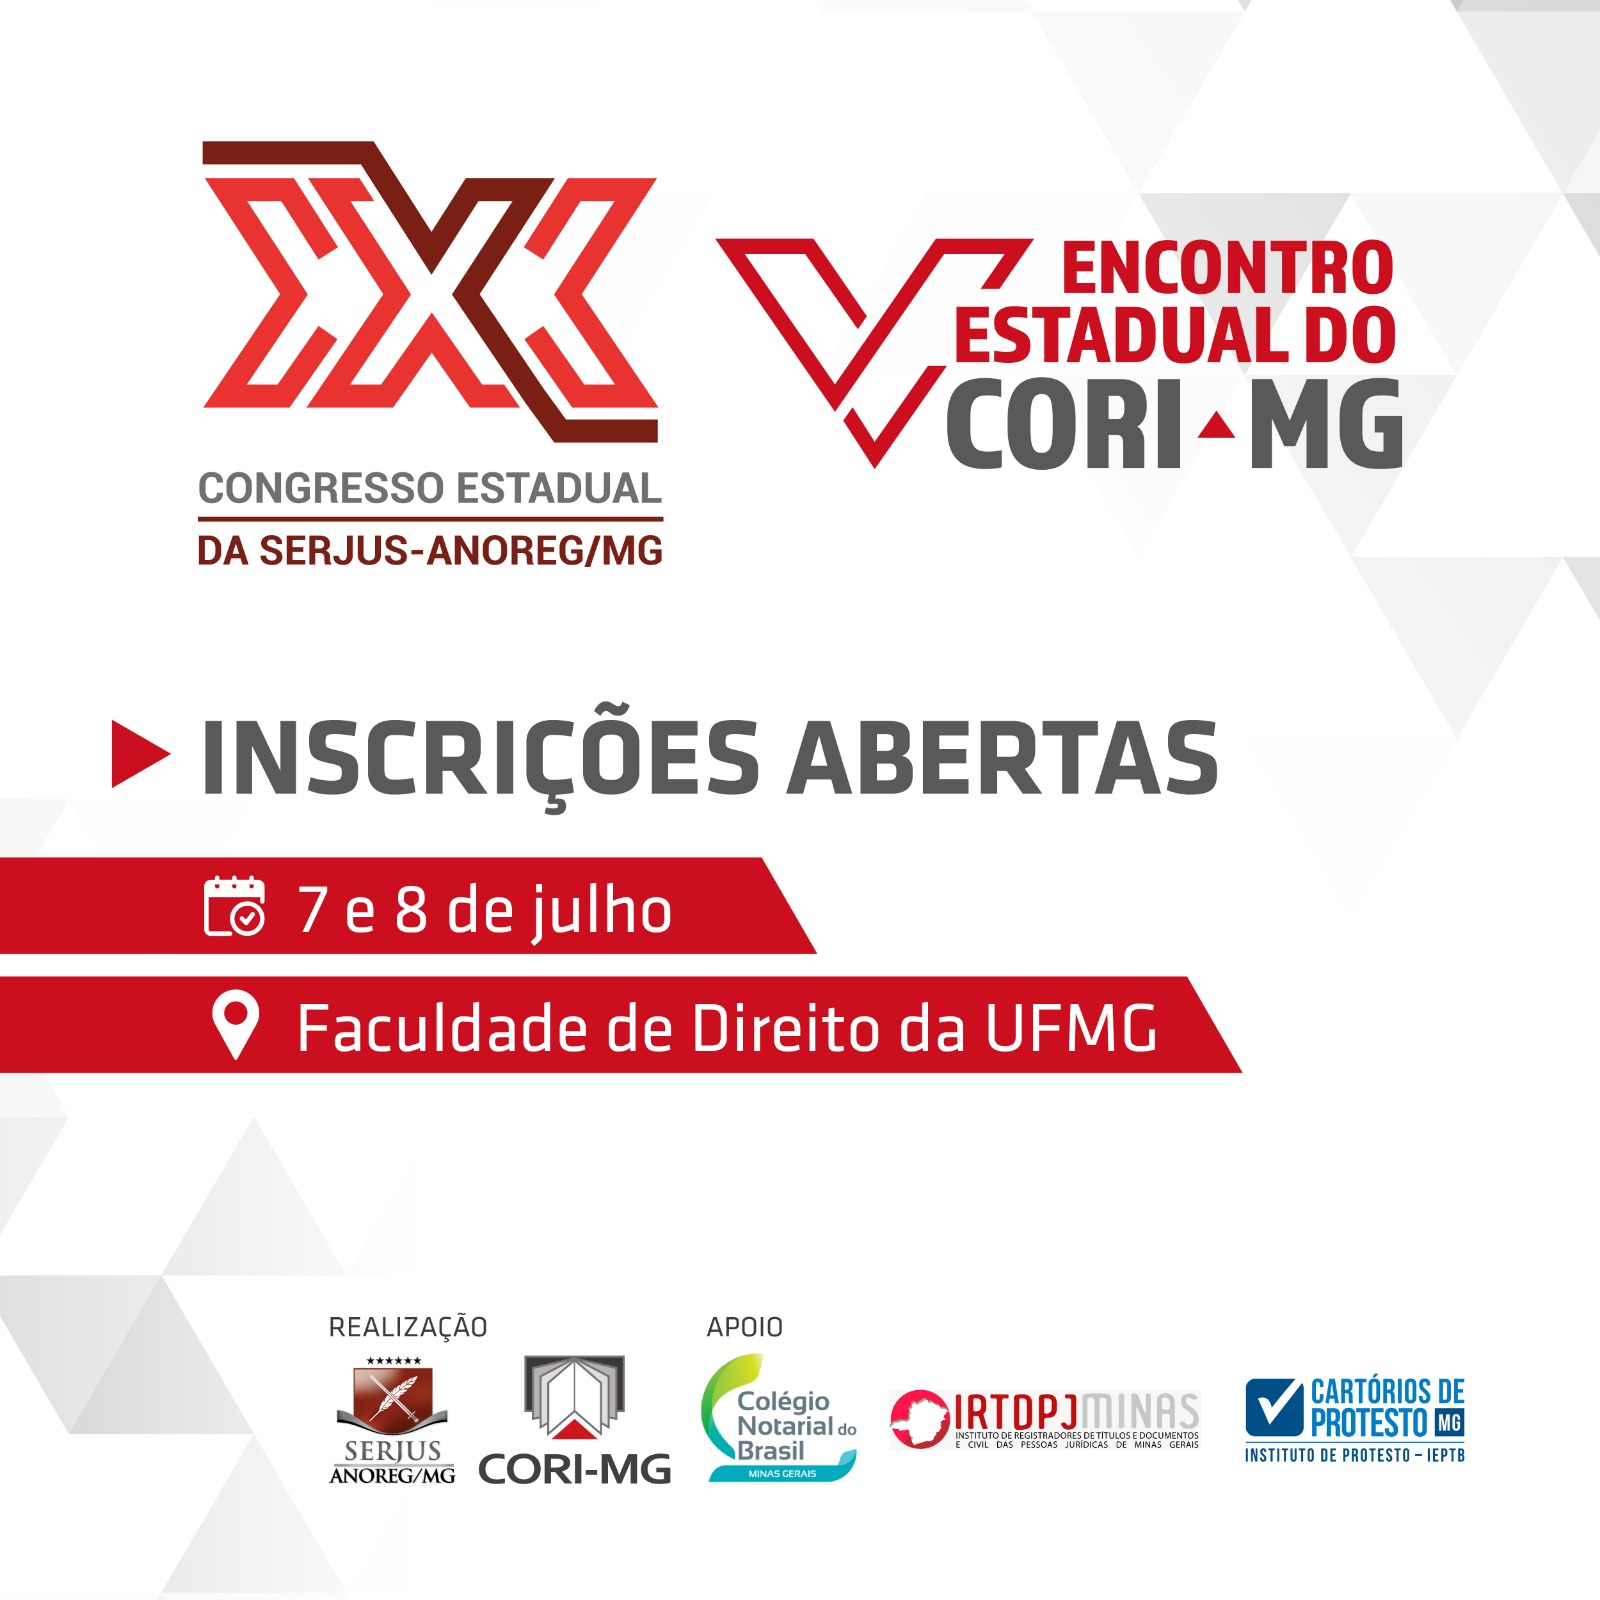 Inscrições abertas para o XXX Congresso Estadual dos Notários e Registradores de Minas Gerais e o V Encontro Estadual do CORI-MG